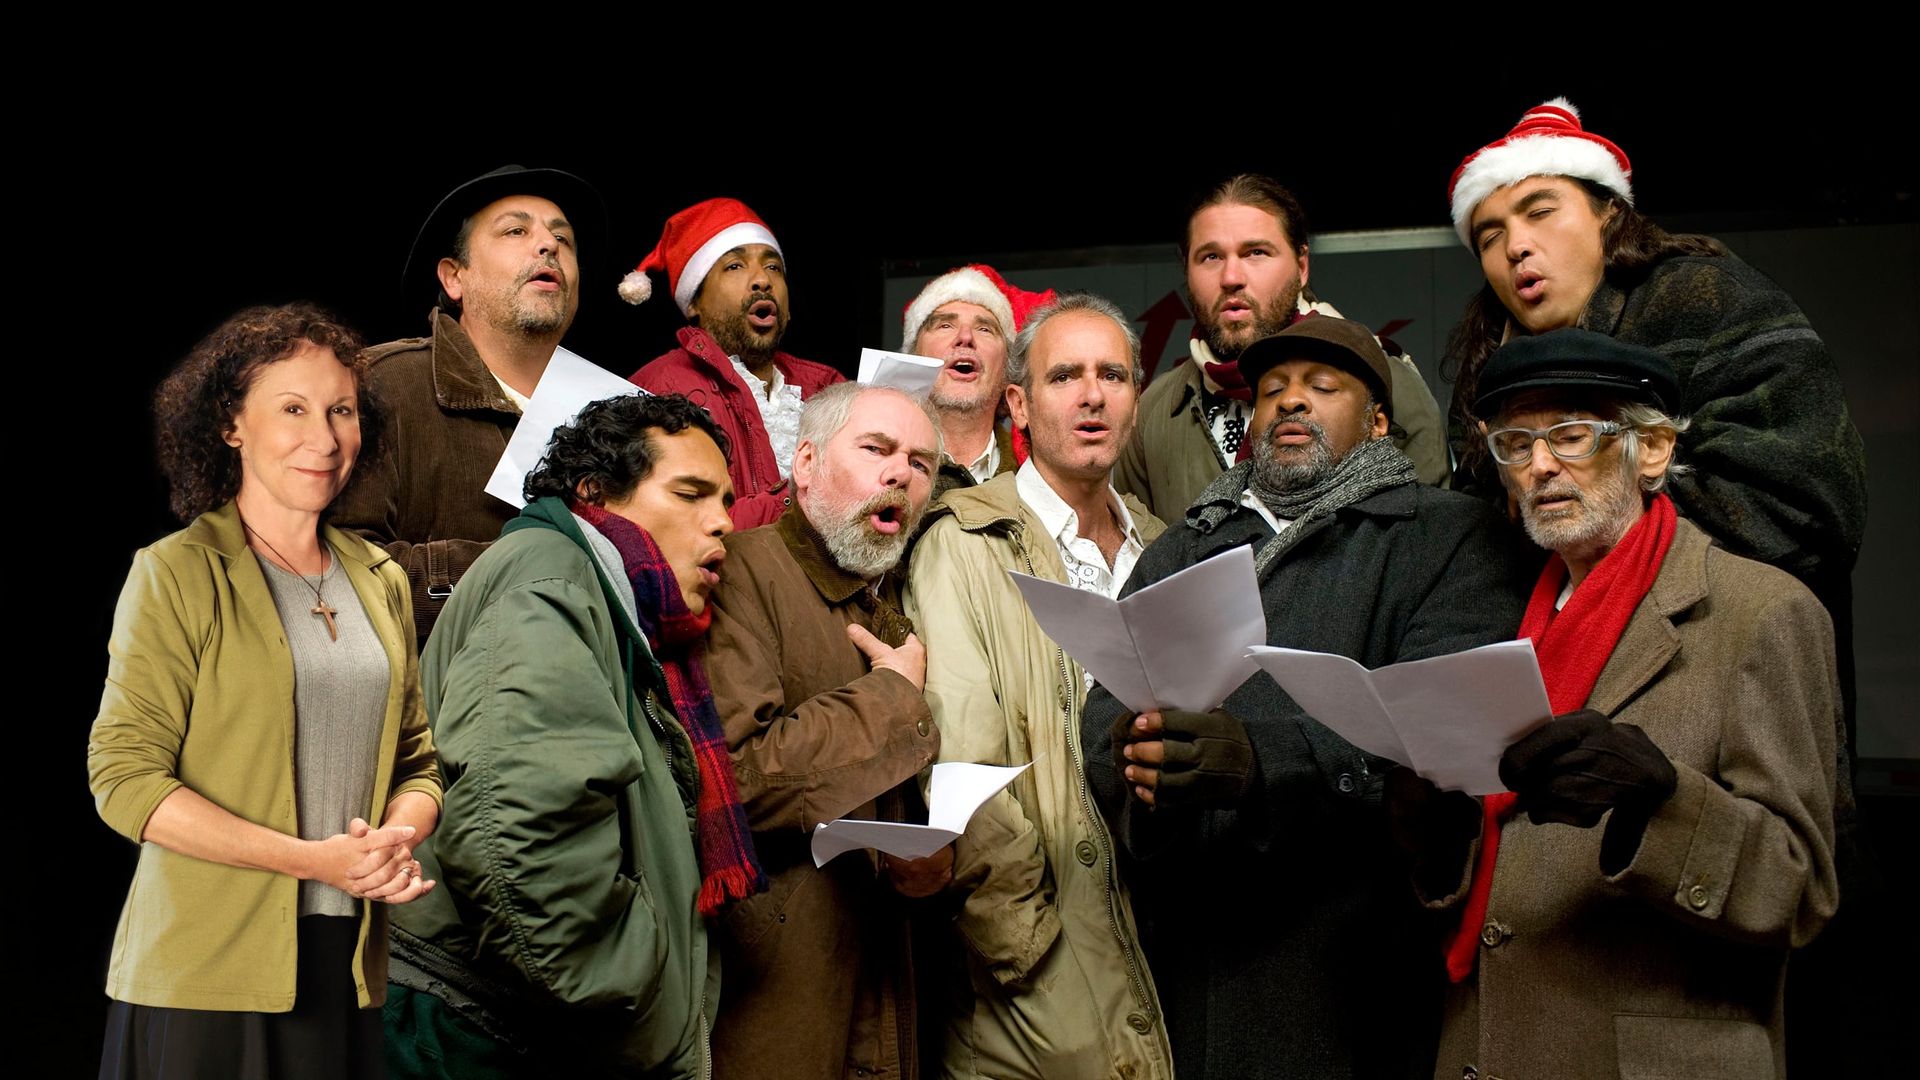 The Christmas Choir background